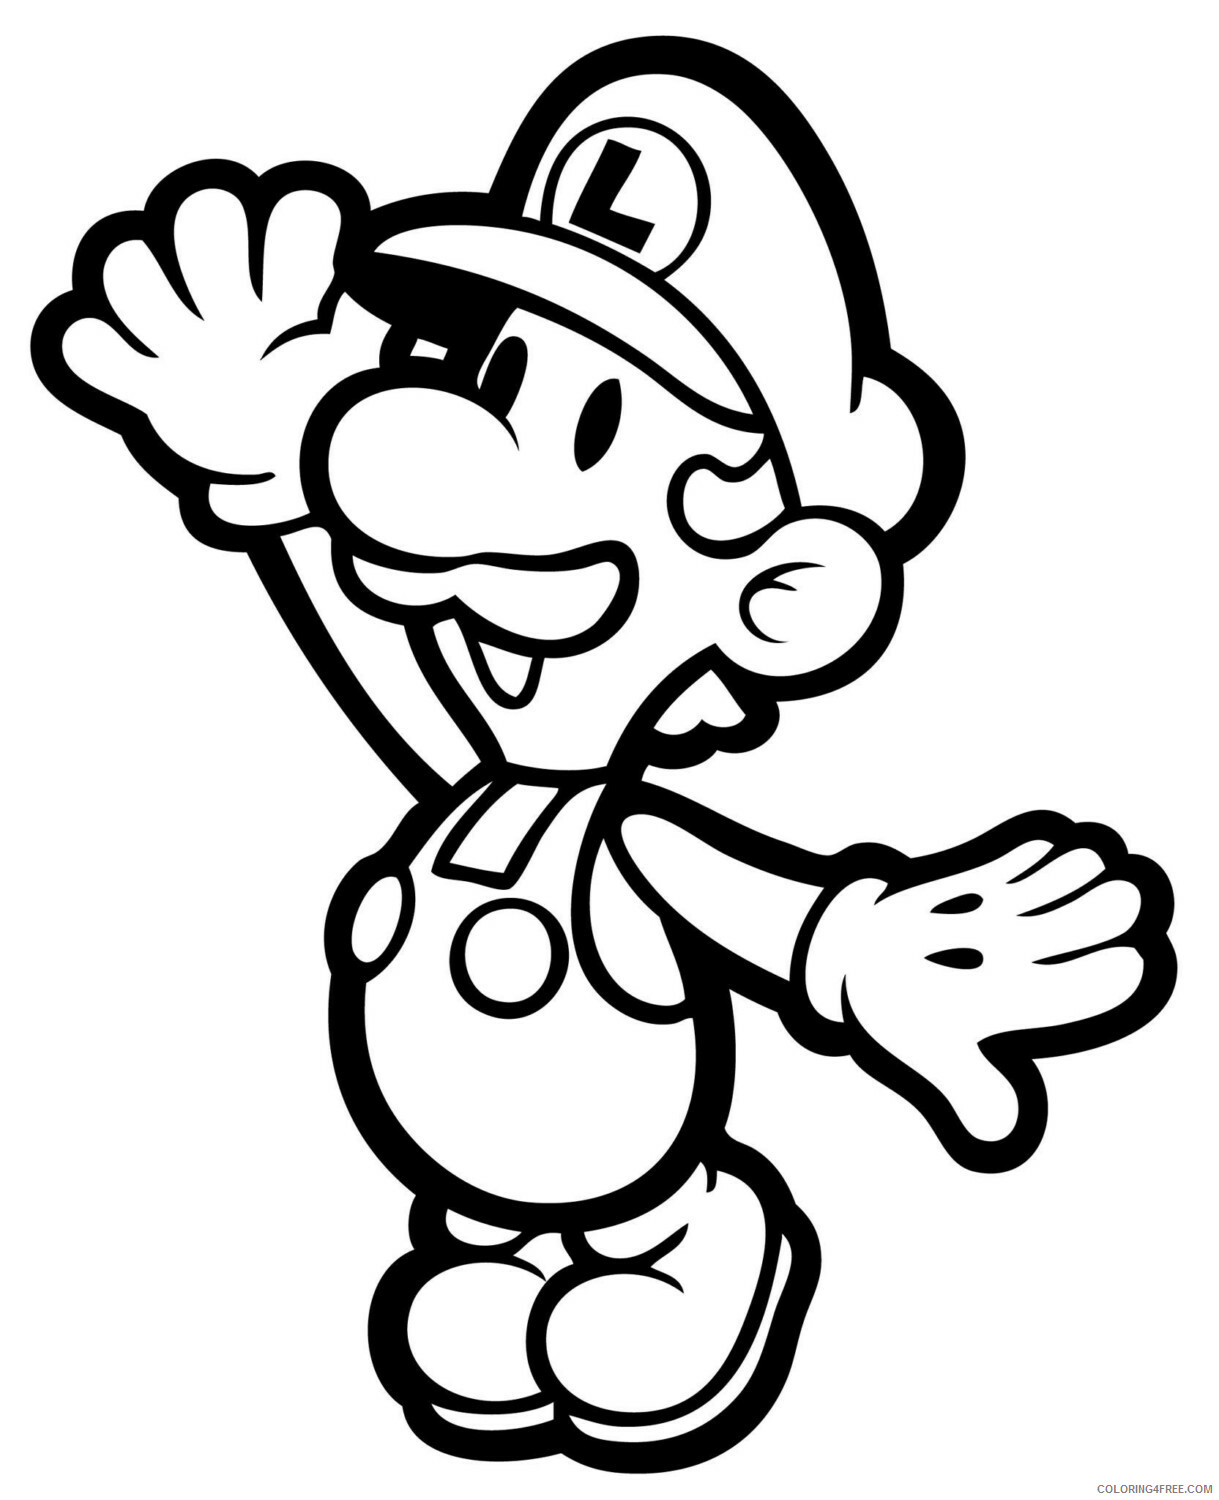 Super Mario Coloring Pages Games Mario Printable 2021 1181 Coloring4free